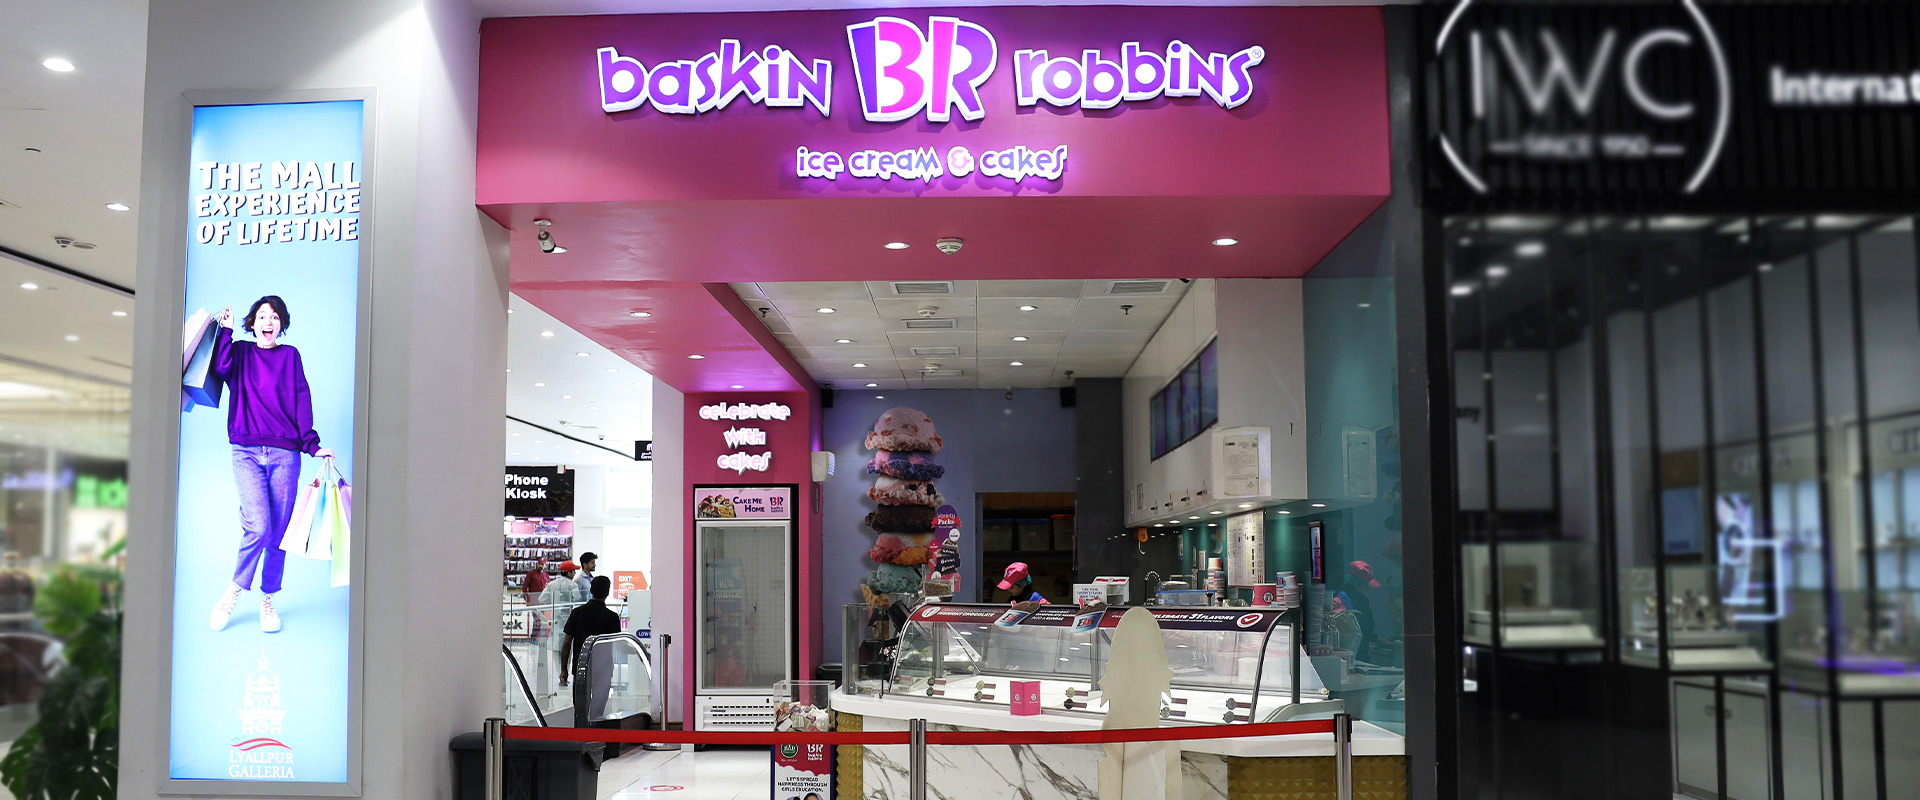 Baskin-Robbins-1